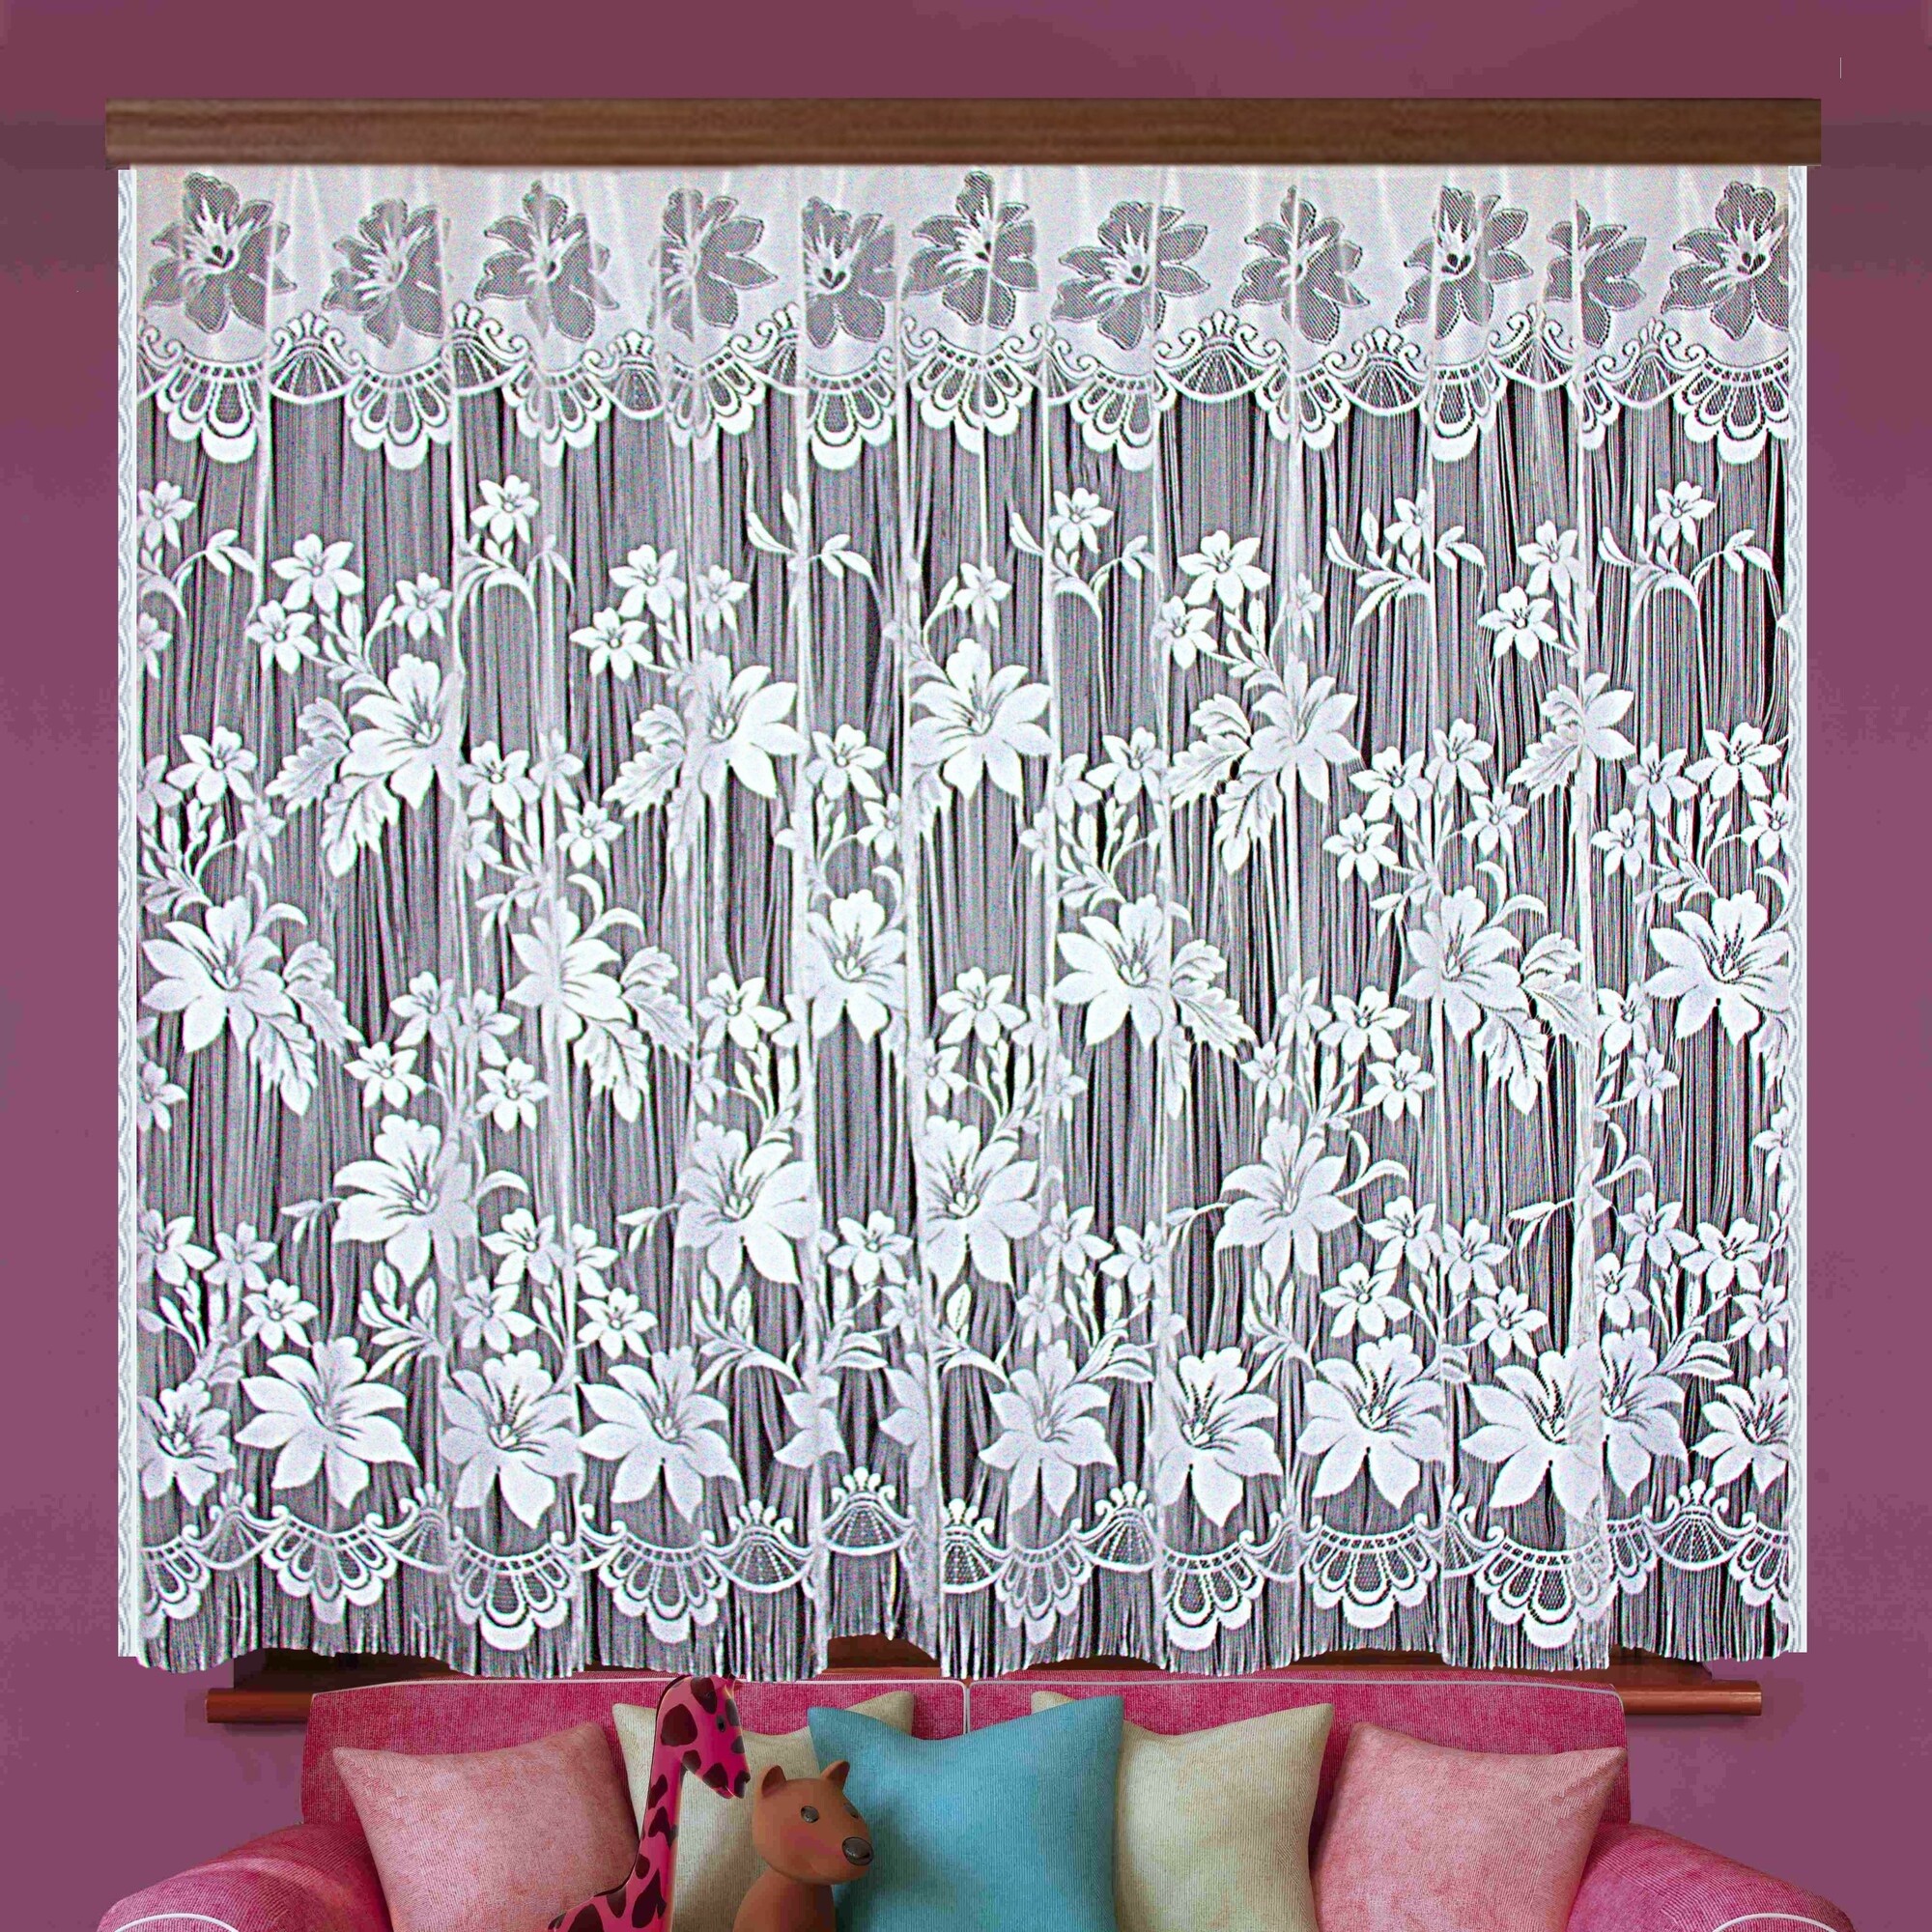 Нитяные шторы Ece цвет: белый (165х250 см - 1 шт)